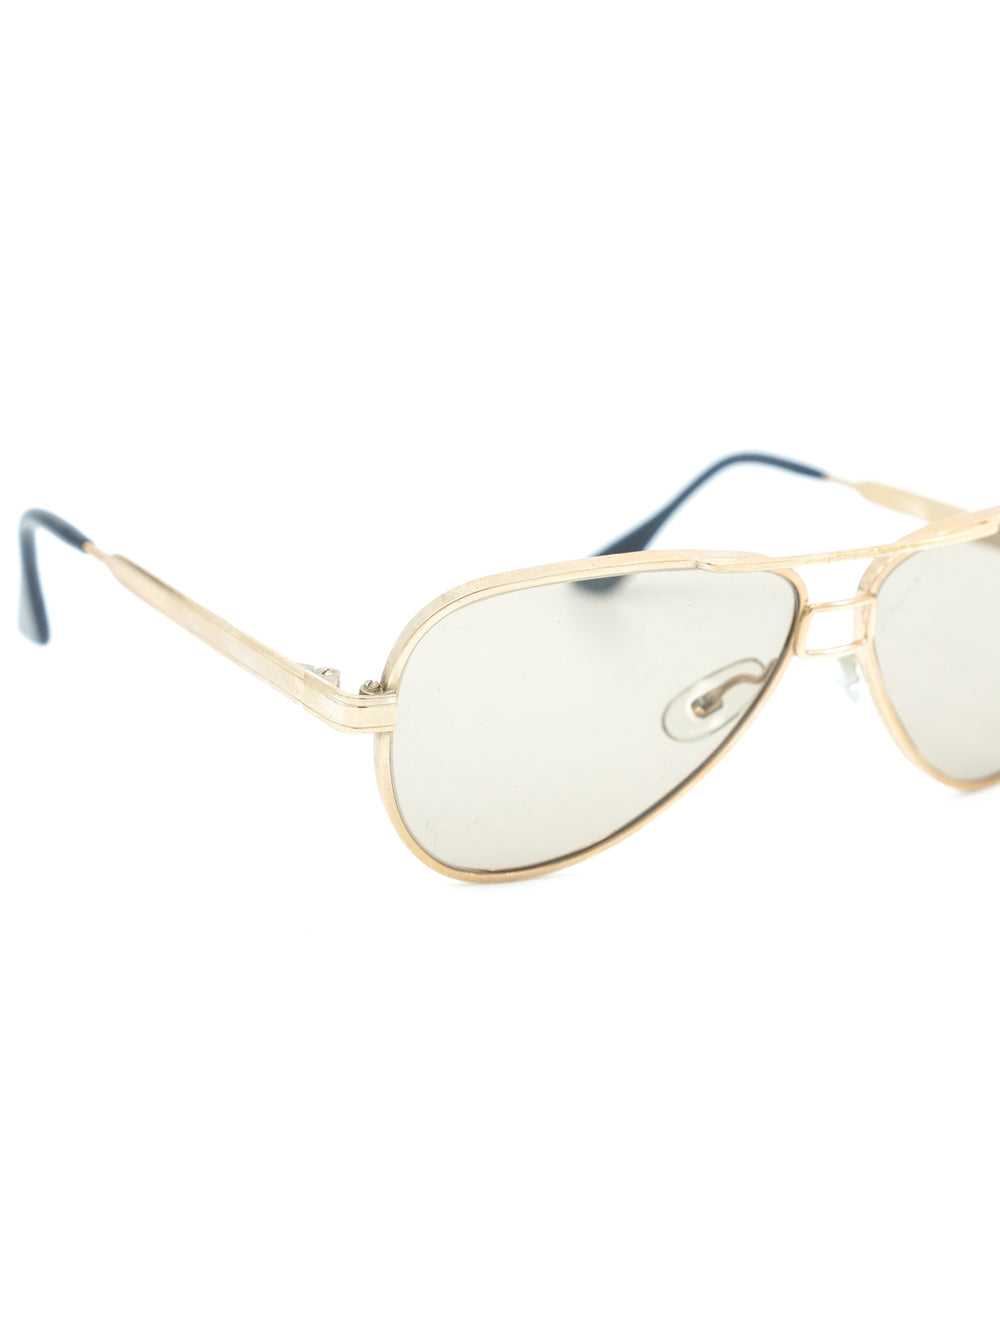 Gold Framed Aviator Sunglasses - image 4